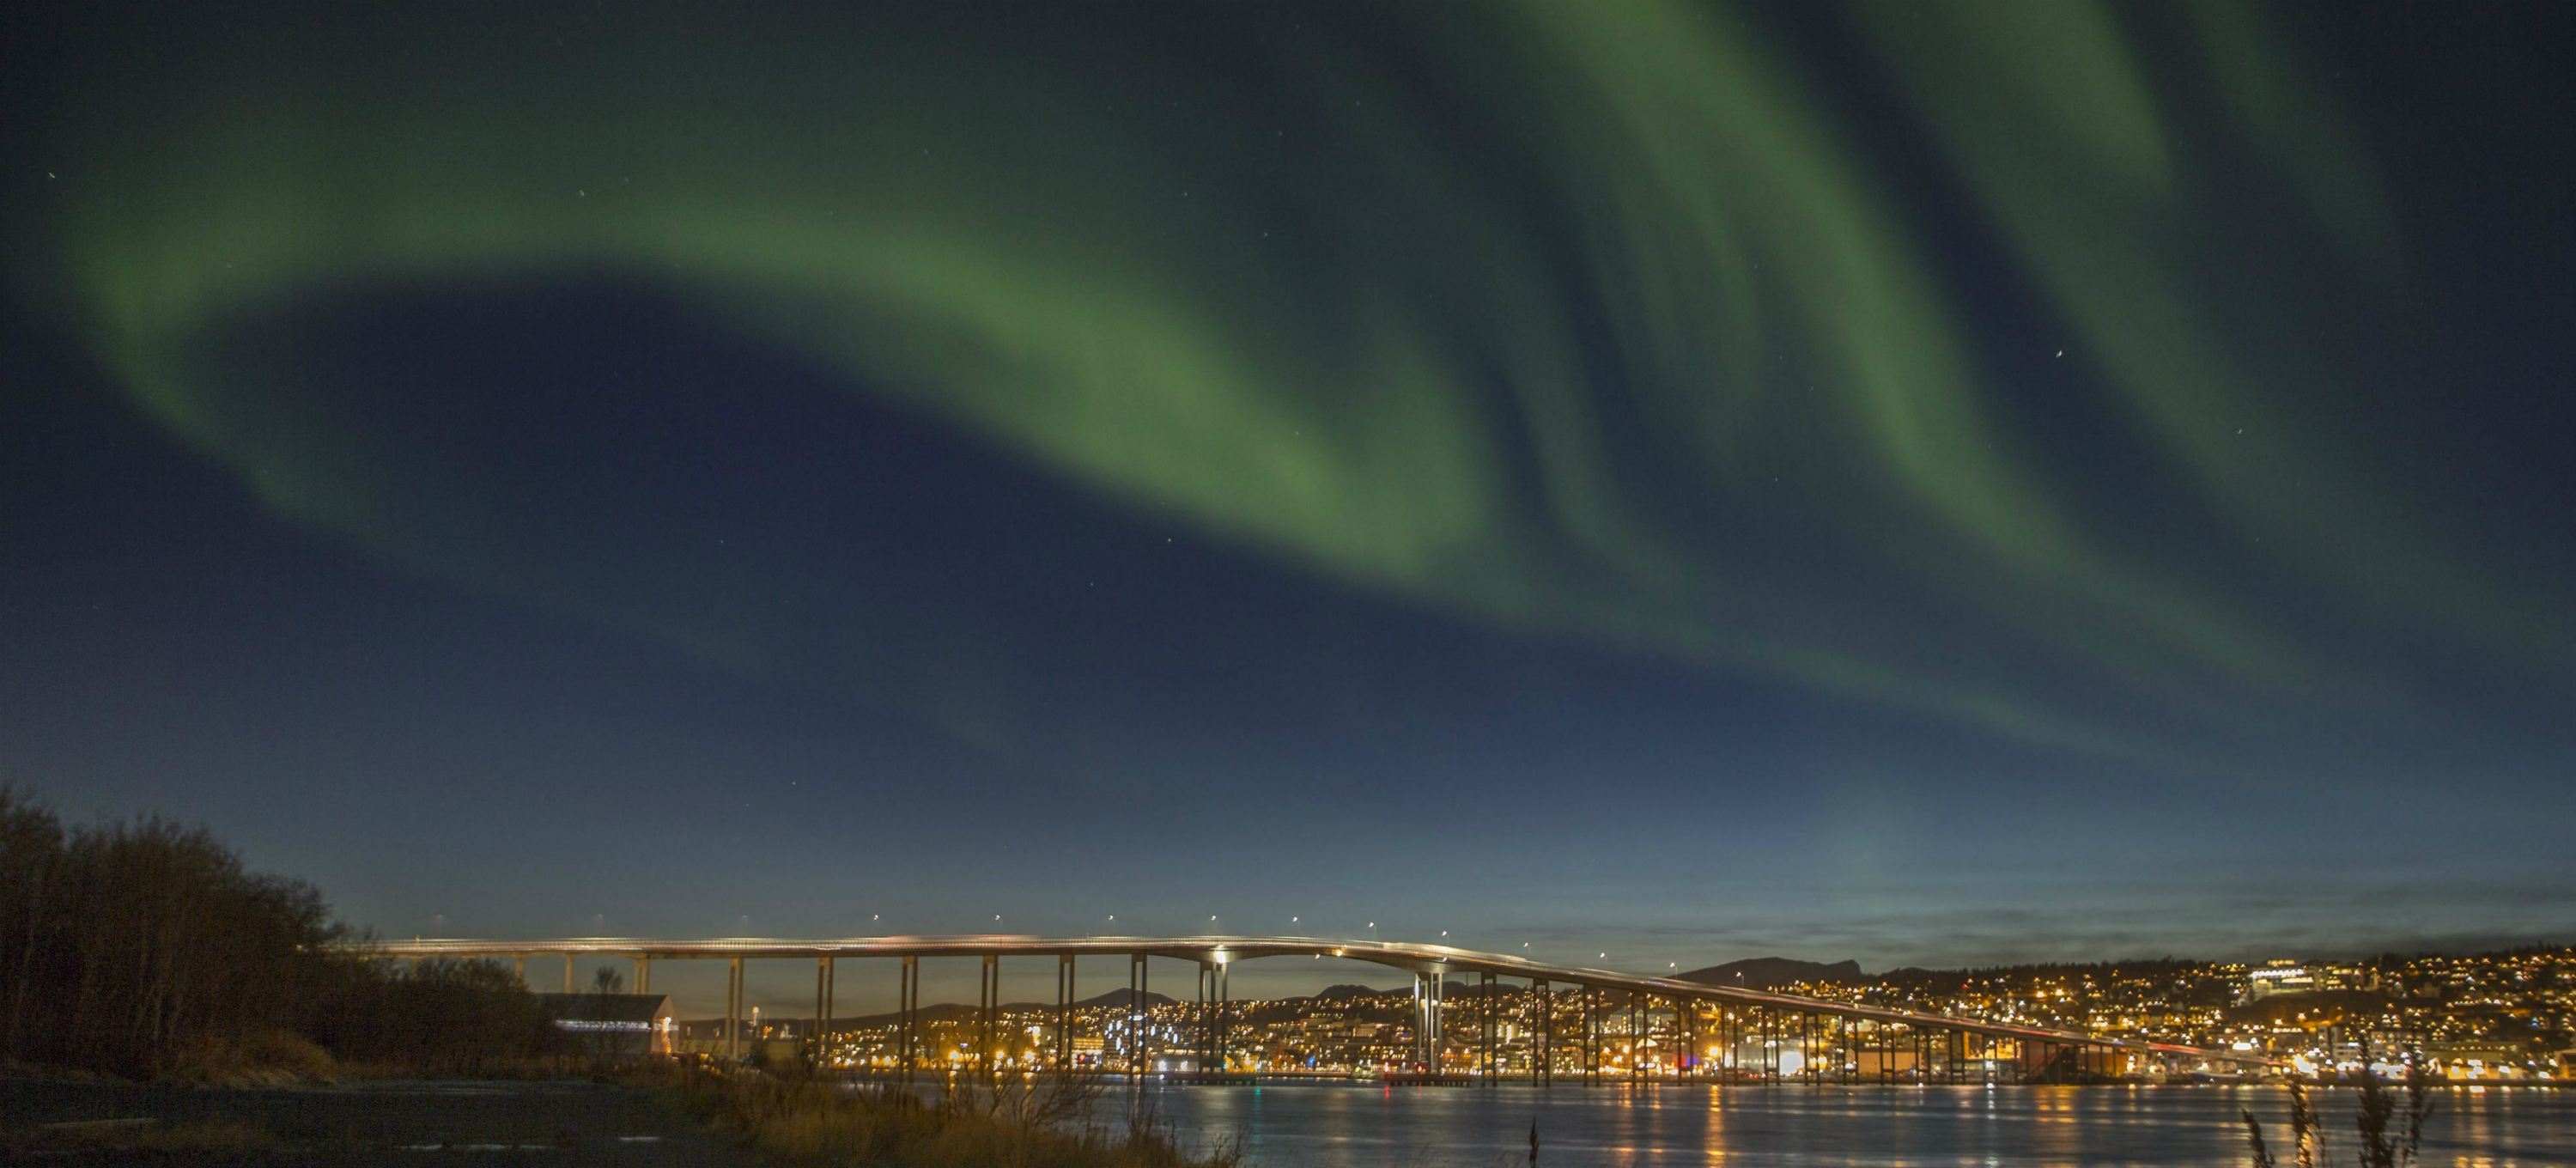 Una aurora boreal ilumina el cielo en la ciurad de Tromso, al norte de Noruega. EFE/Jan Morten Bjoernbakk.